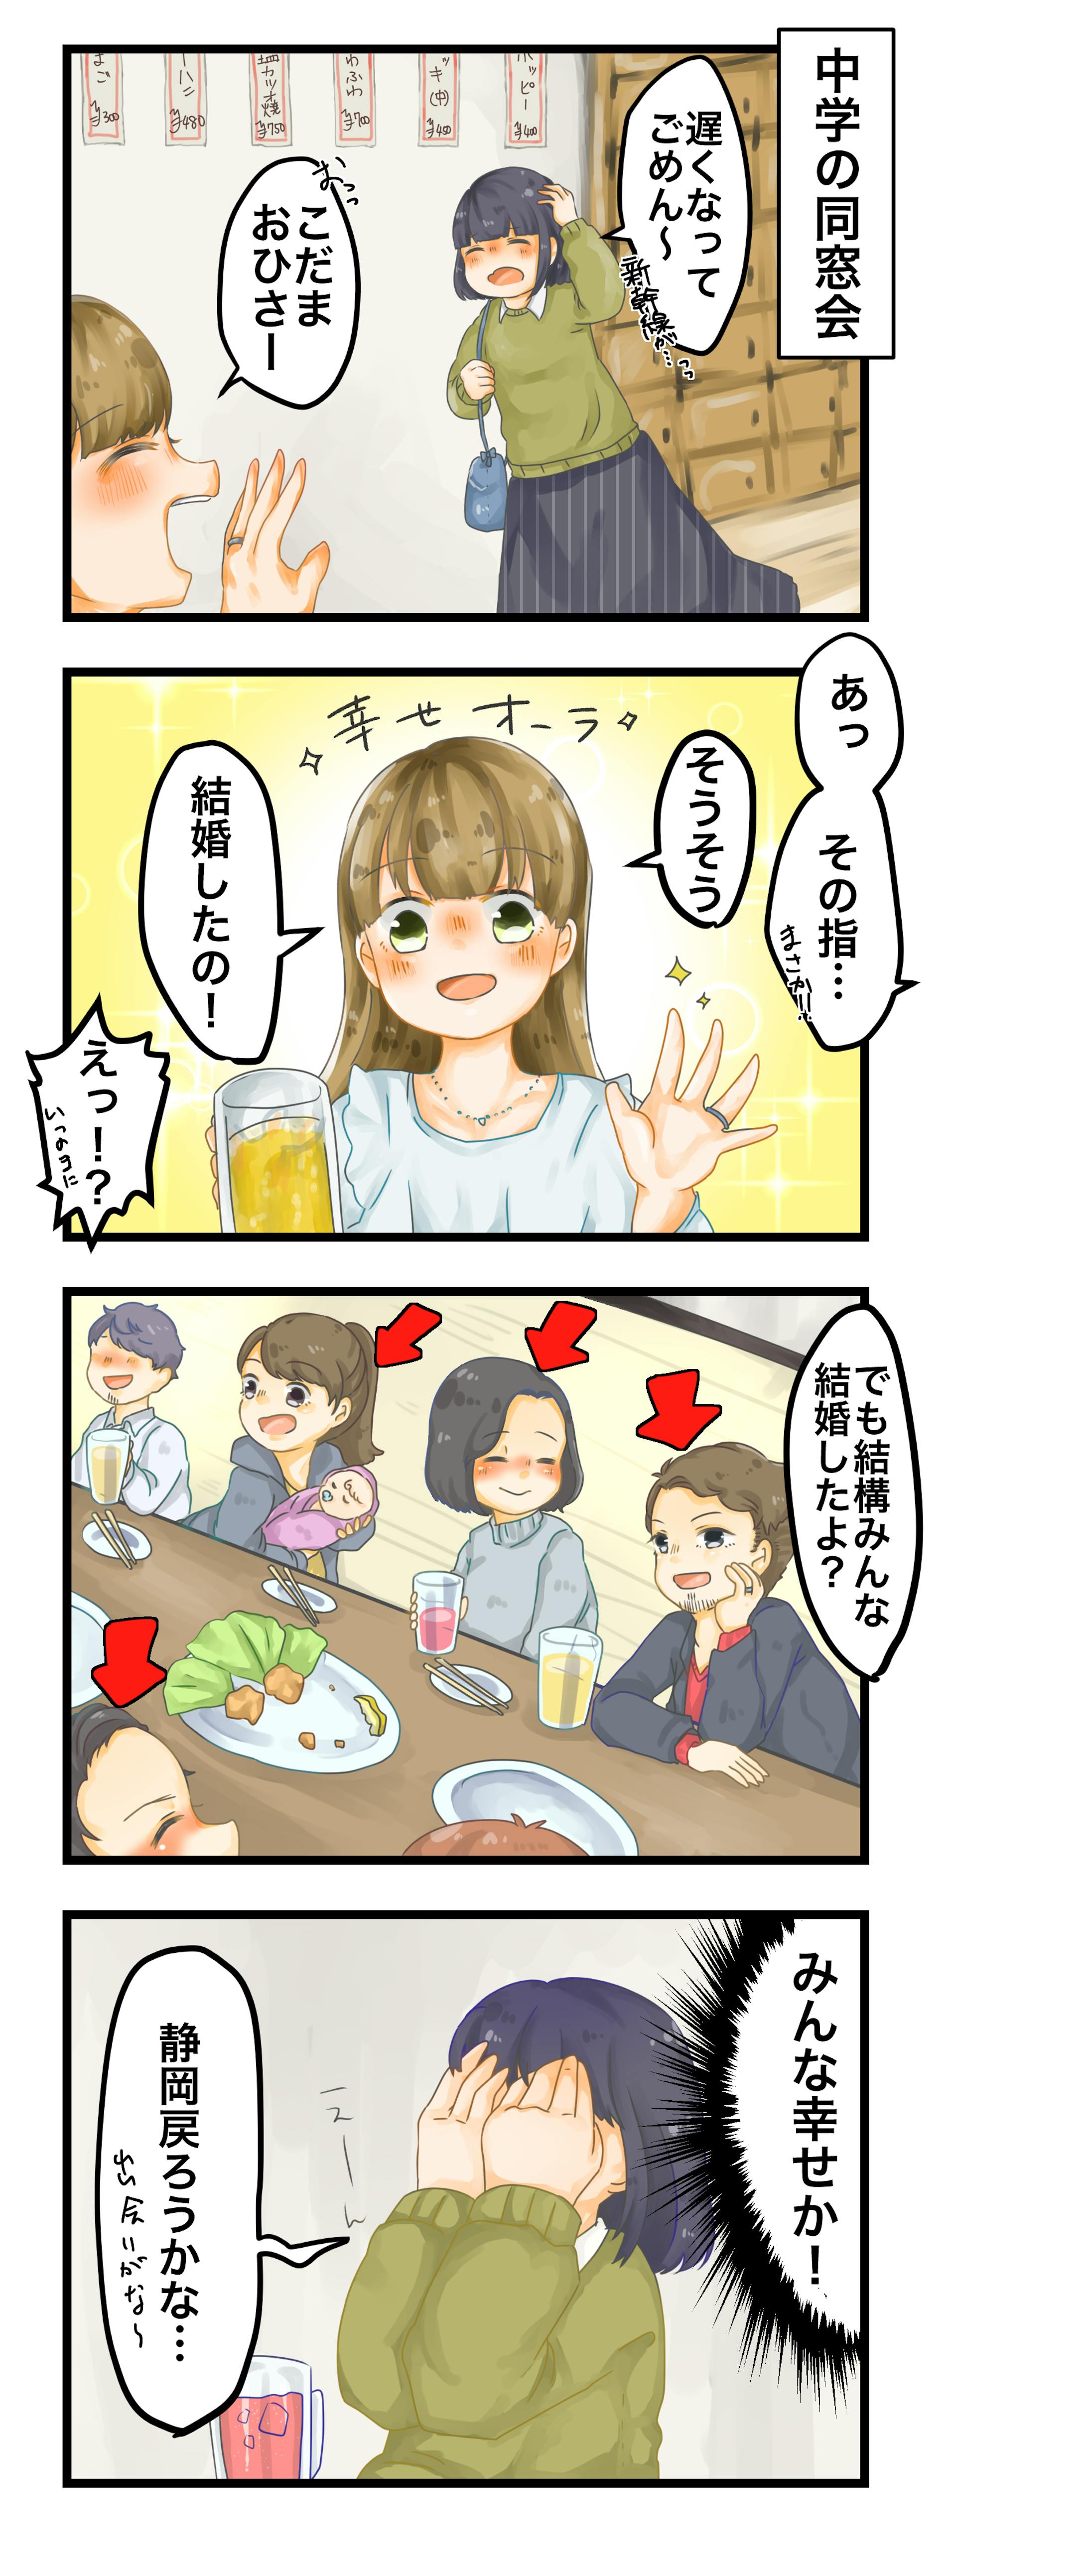 SNS漫画『静岡にこだまする』-10